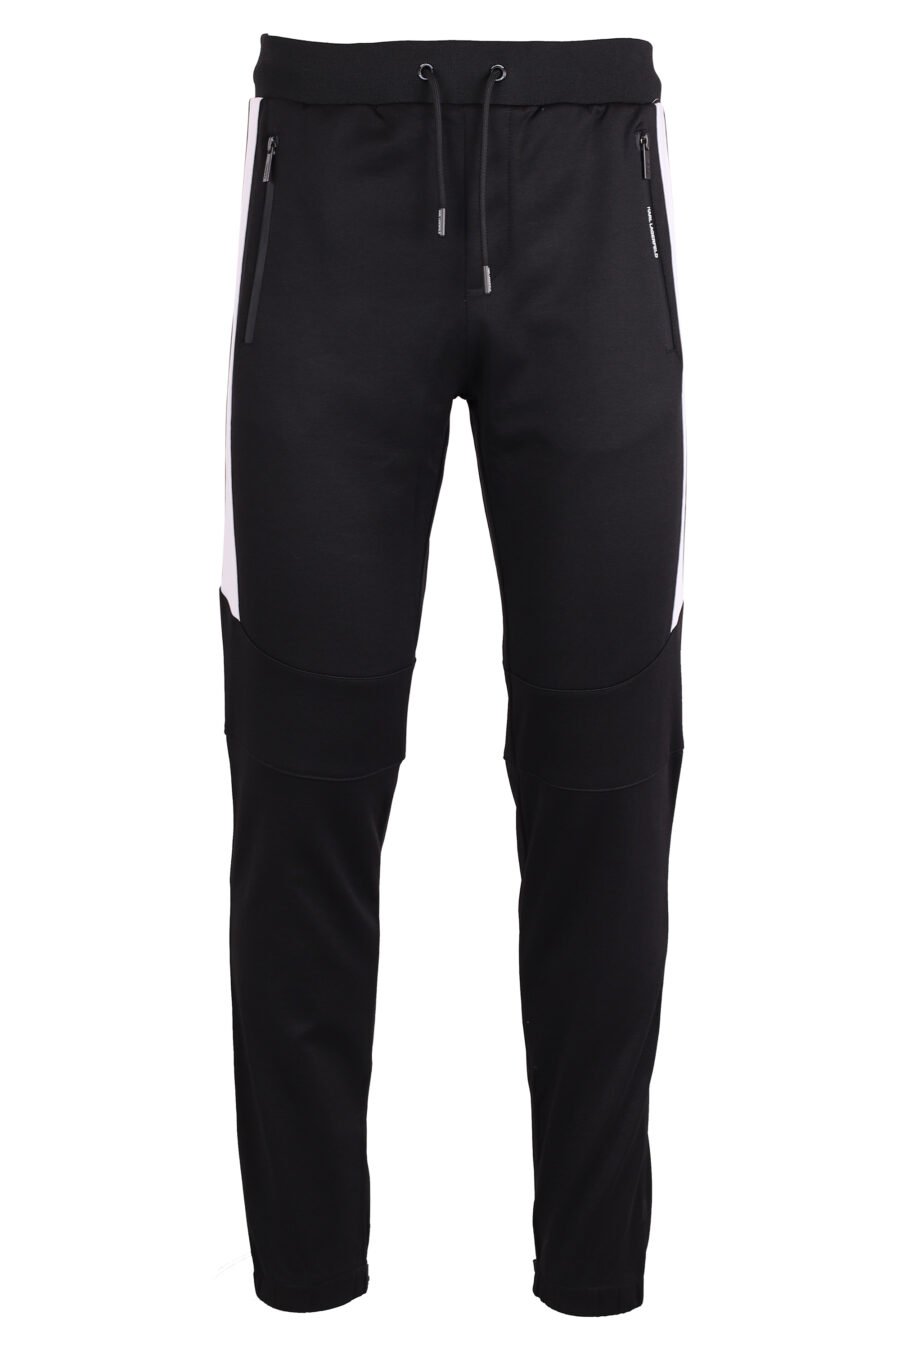 Pantalón de chandal negro con rayas blancas laterales - IMG 4379